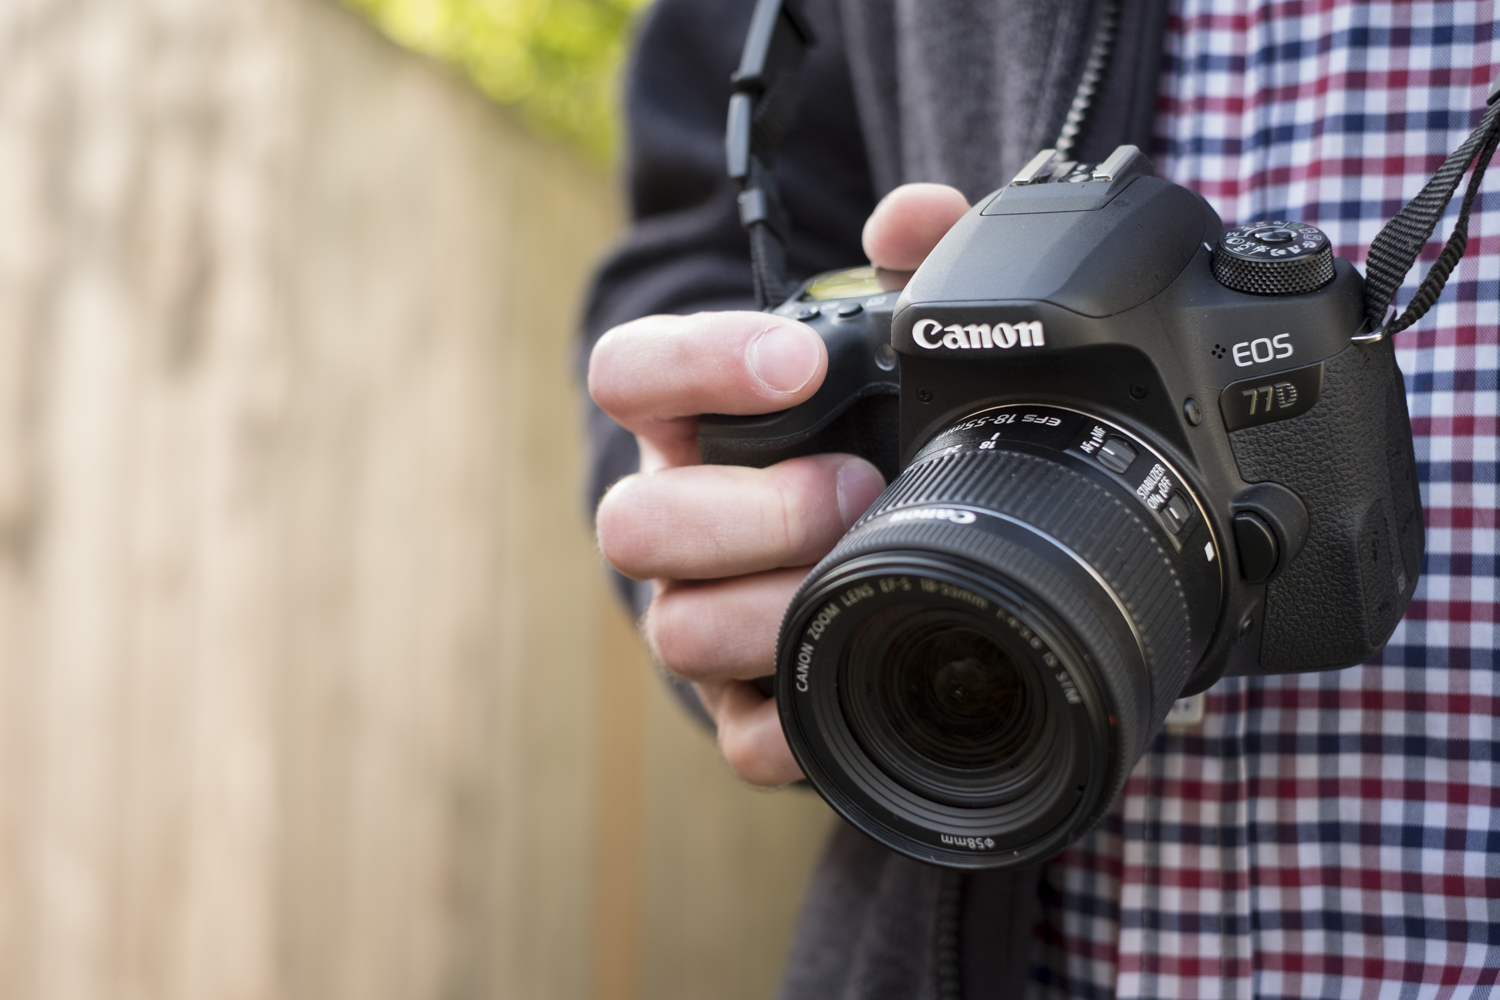 regeren fluit vergiftigen Canon EOS 77D Review | Digital Trends